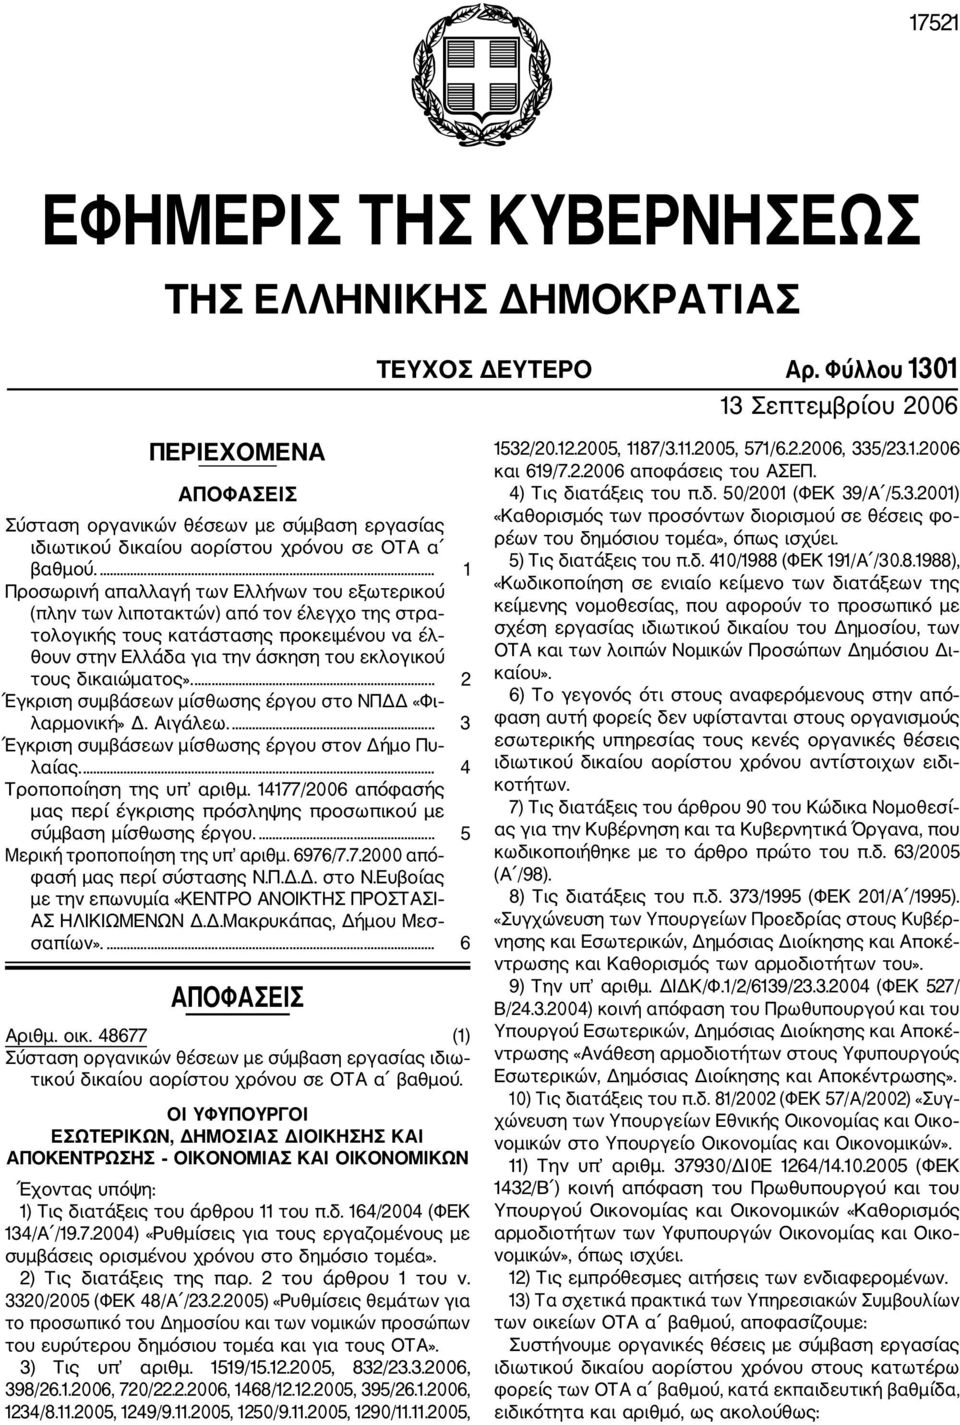 ... Προσωρινή απαλλαγή των Ελλήνων του εξωτερικού (πλην των λιποτακτών) από τον έλεγχο της στρα τολογικής τους κατάστασης προκειμένου να έλ θουν στην Ελλάδα για την άσκηση του εκλογικού τους